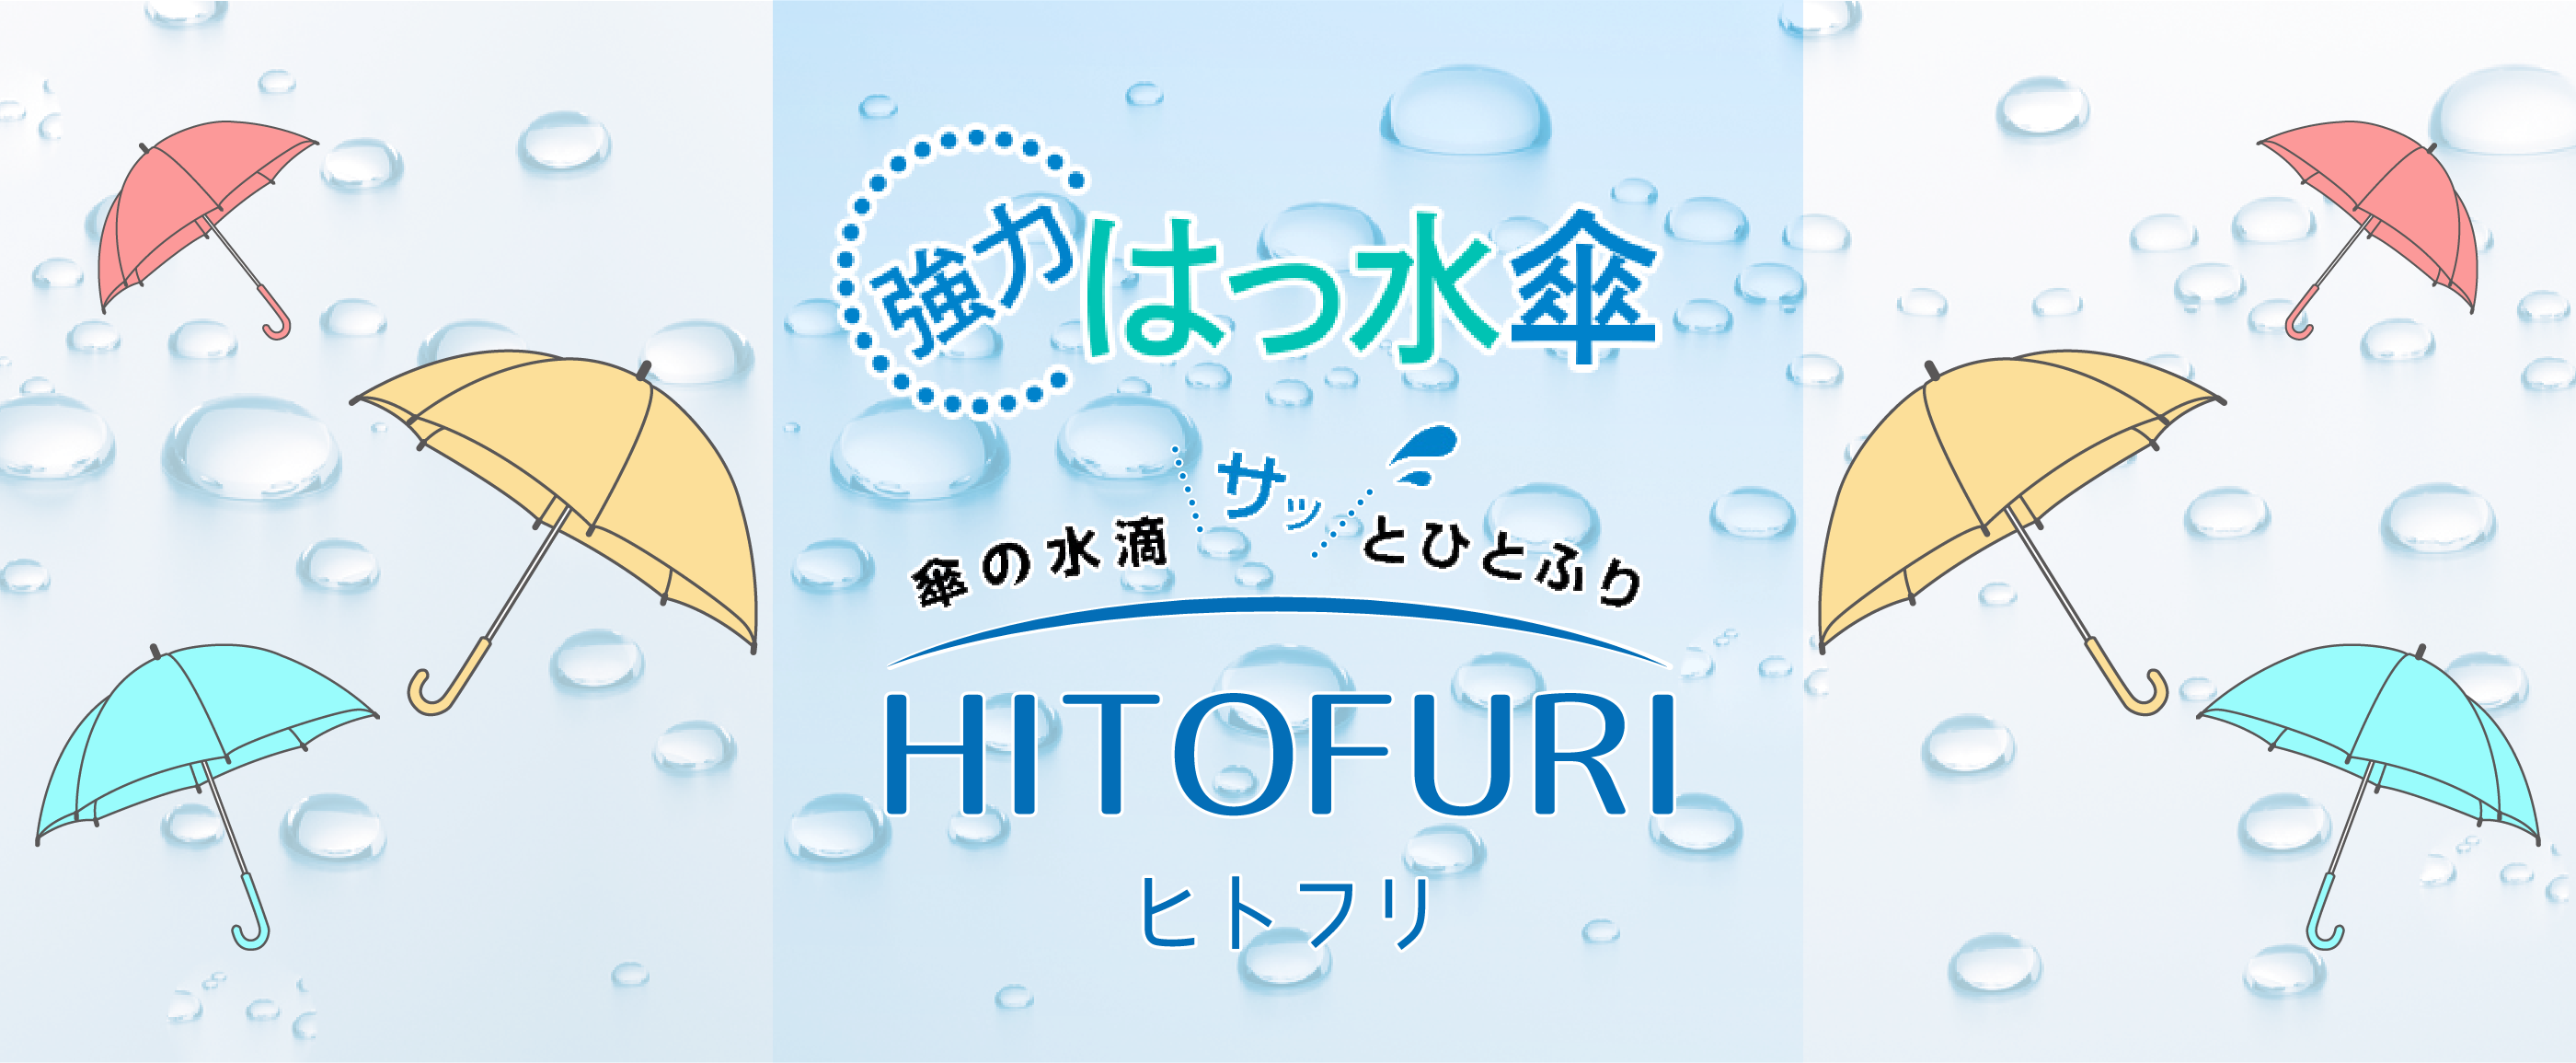 傘の水滴サッとひとふり HITOFURI ヒトフリ